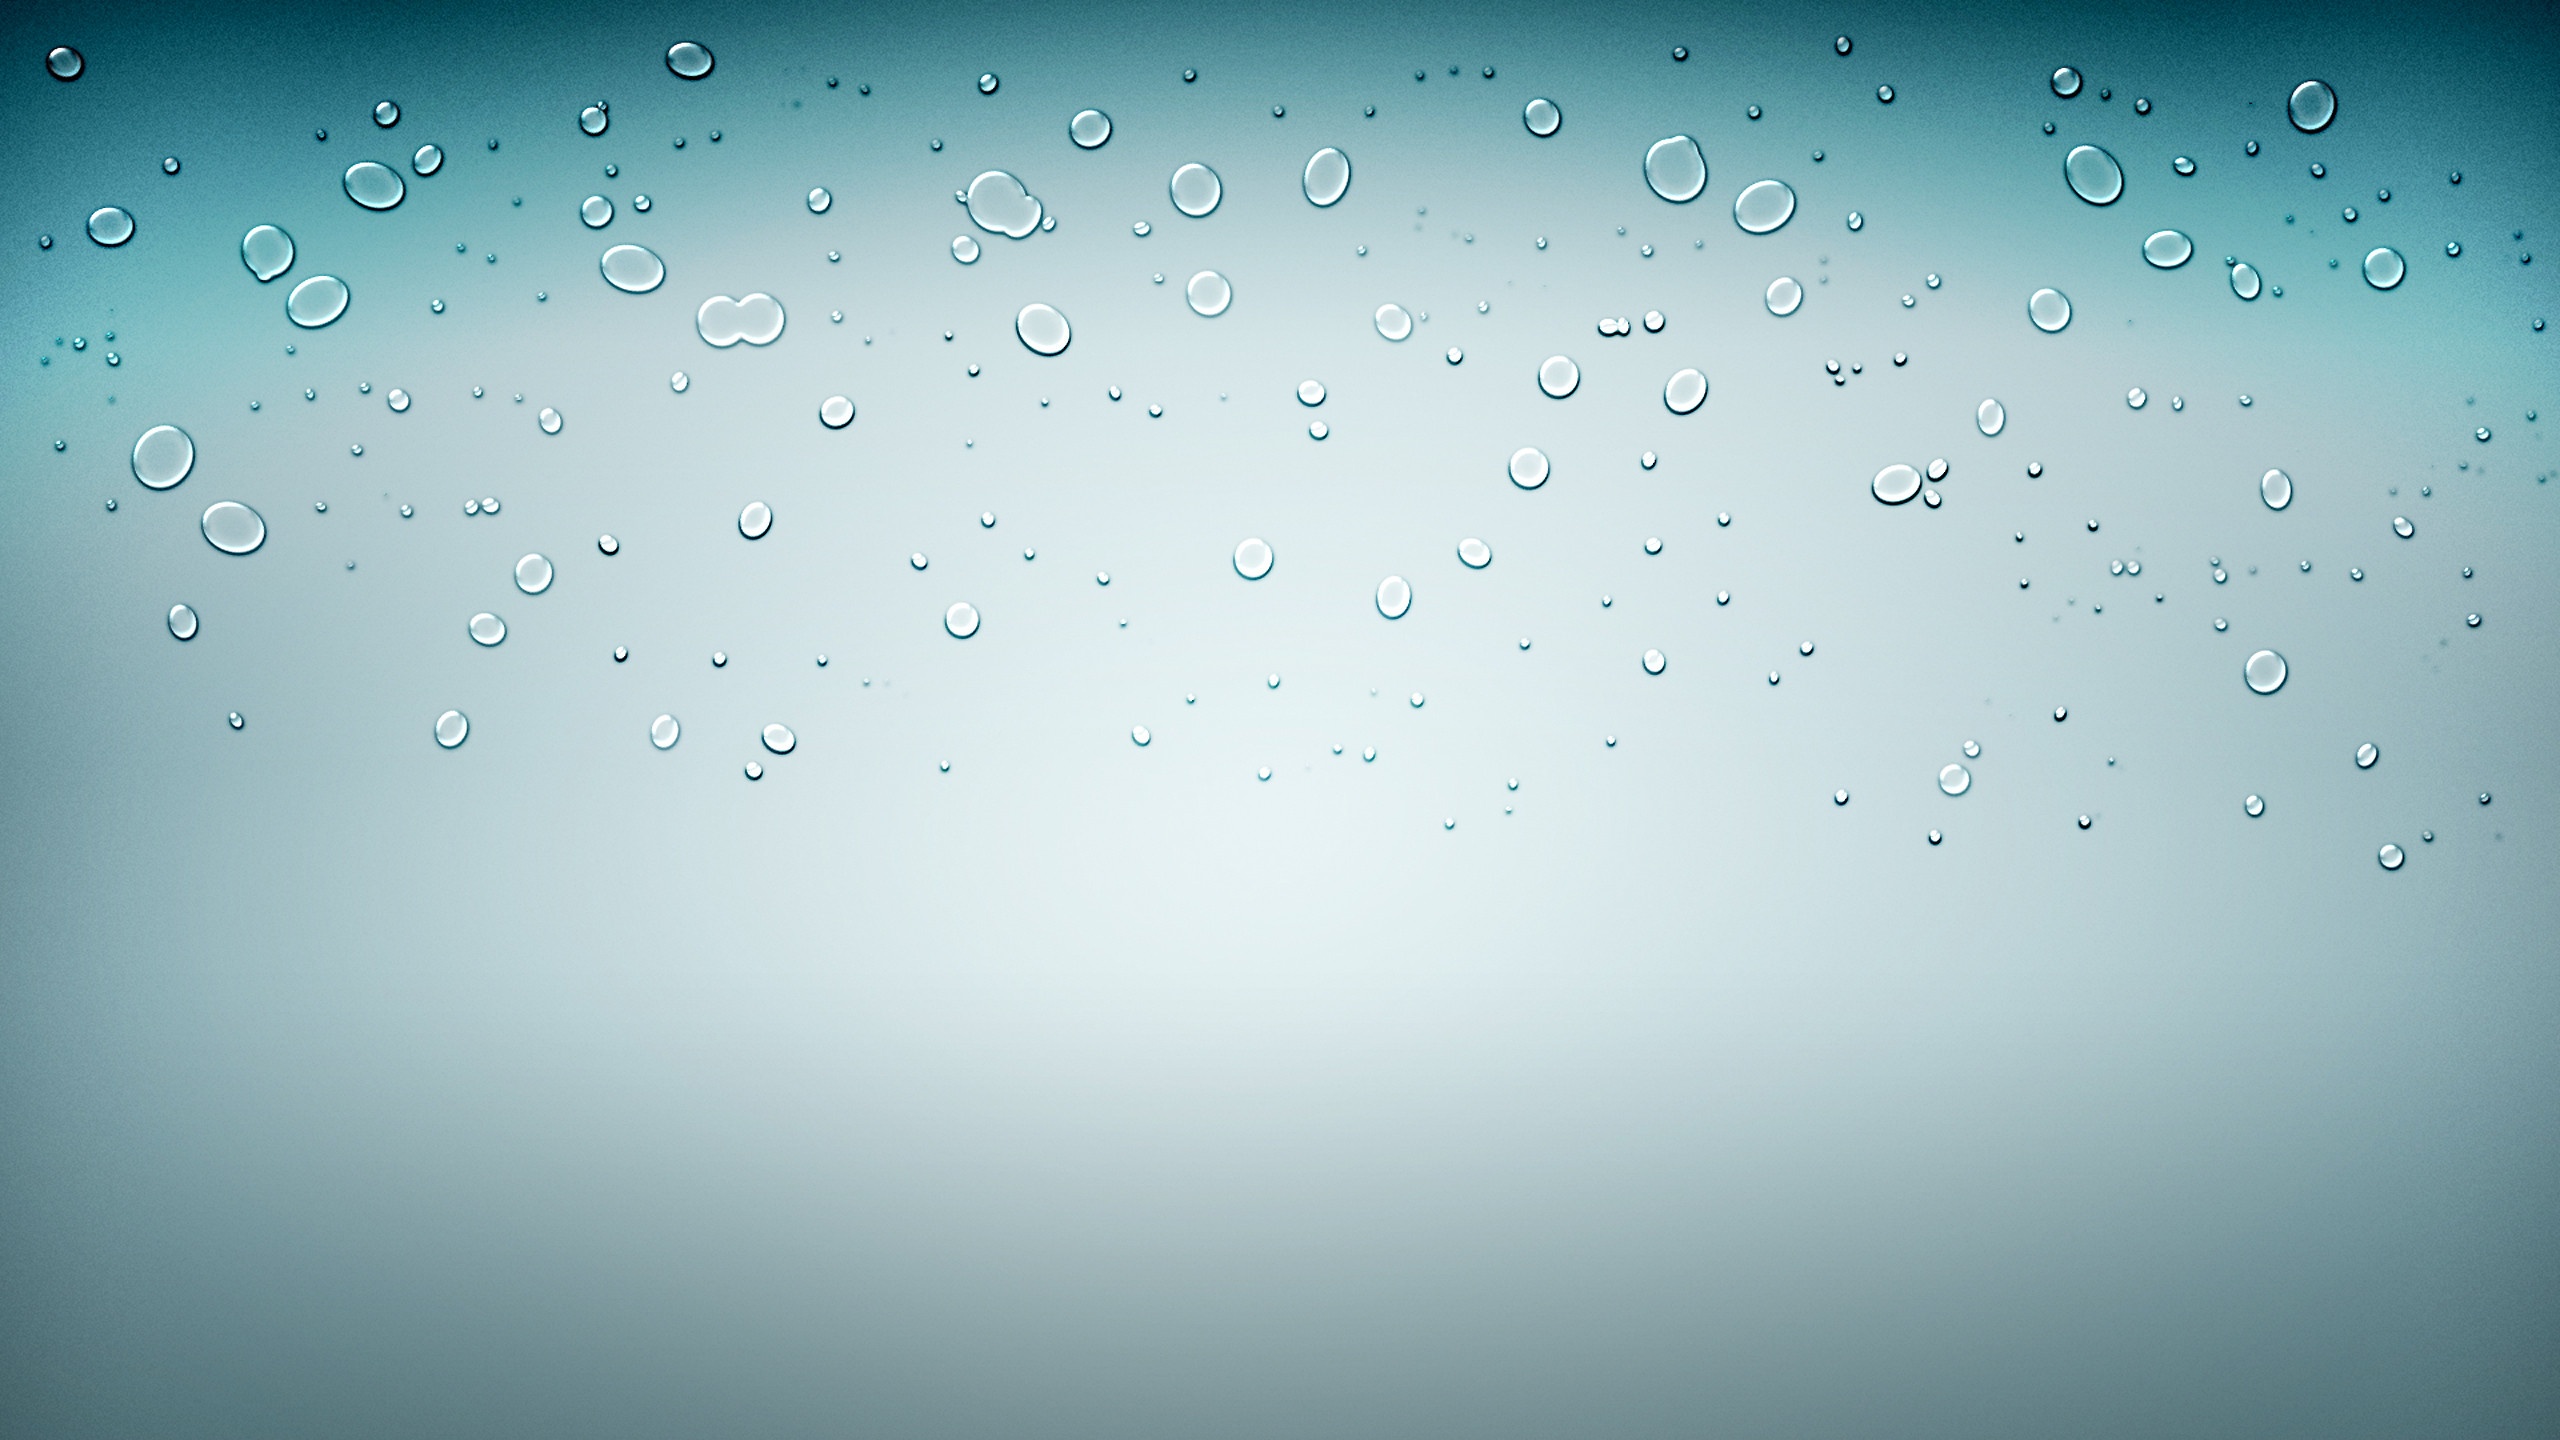 50+] iOS Water Droplet Wallpaper - WallpaperSafari